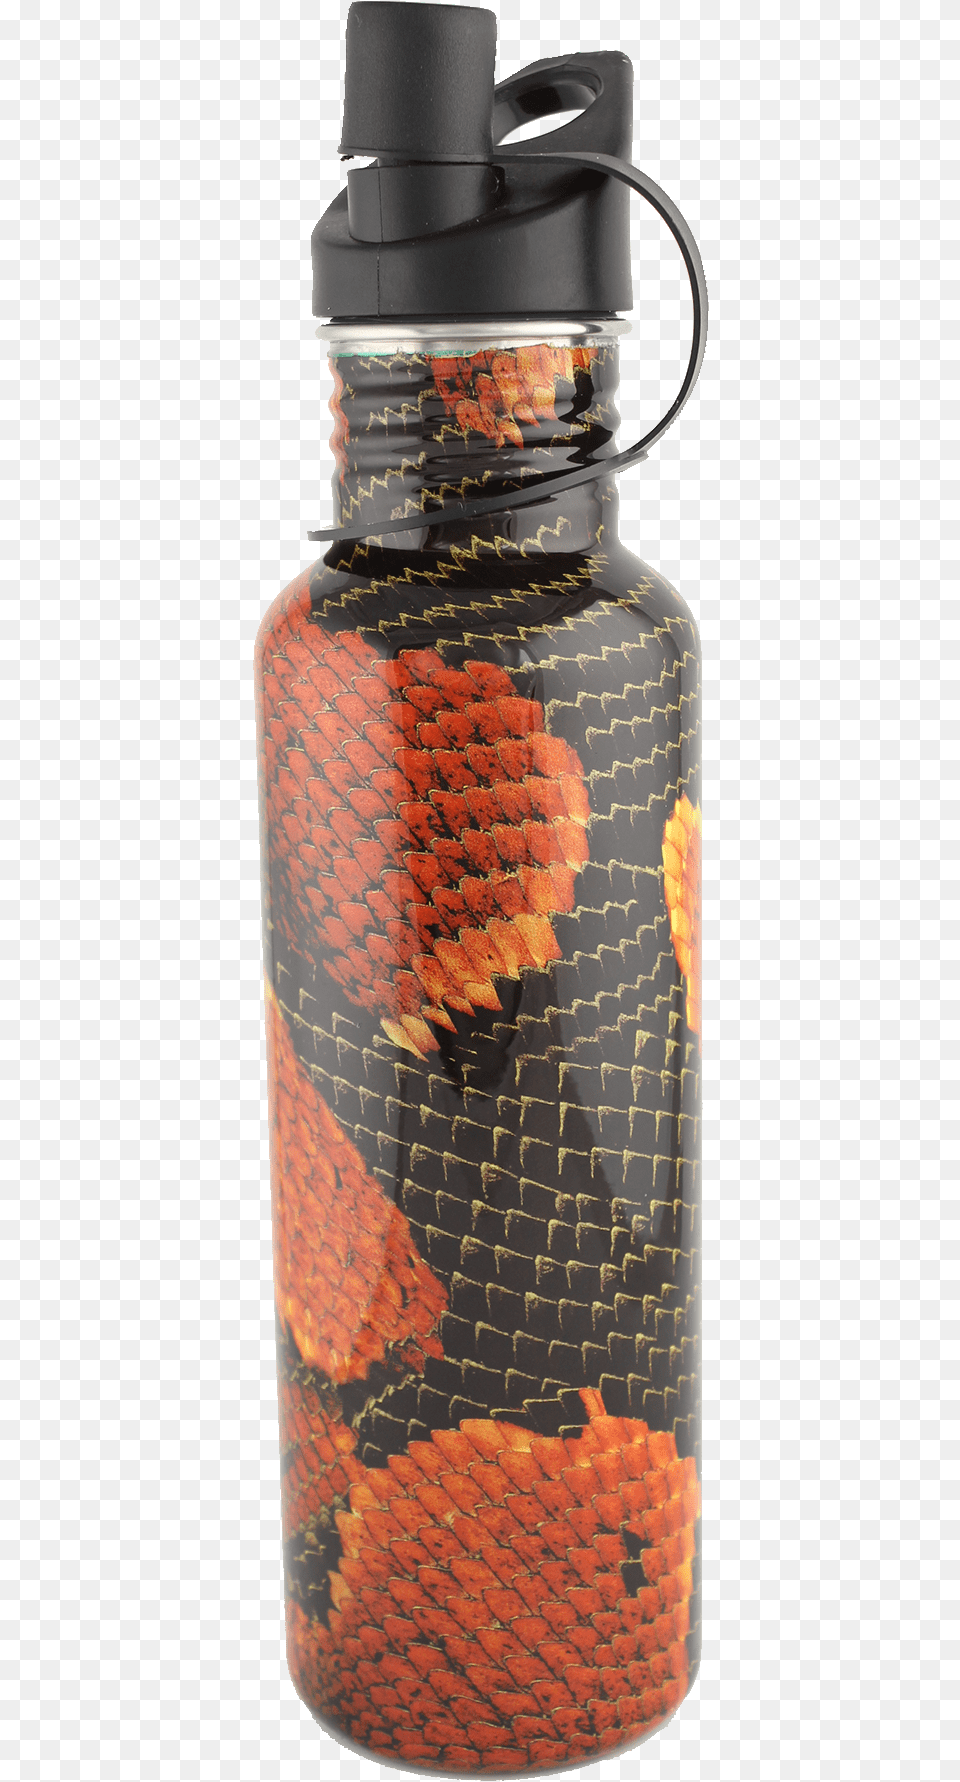 Empty Water Bottle, Water Bottle, Jar, Shaker Png Image